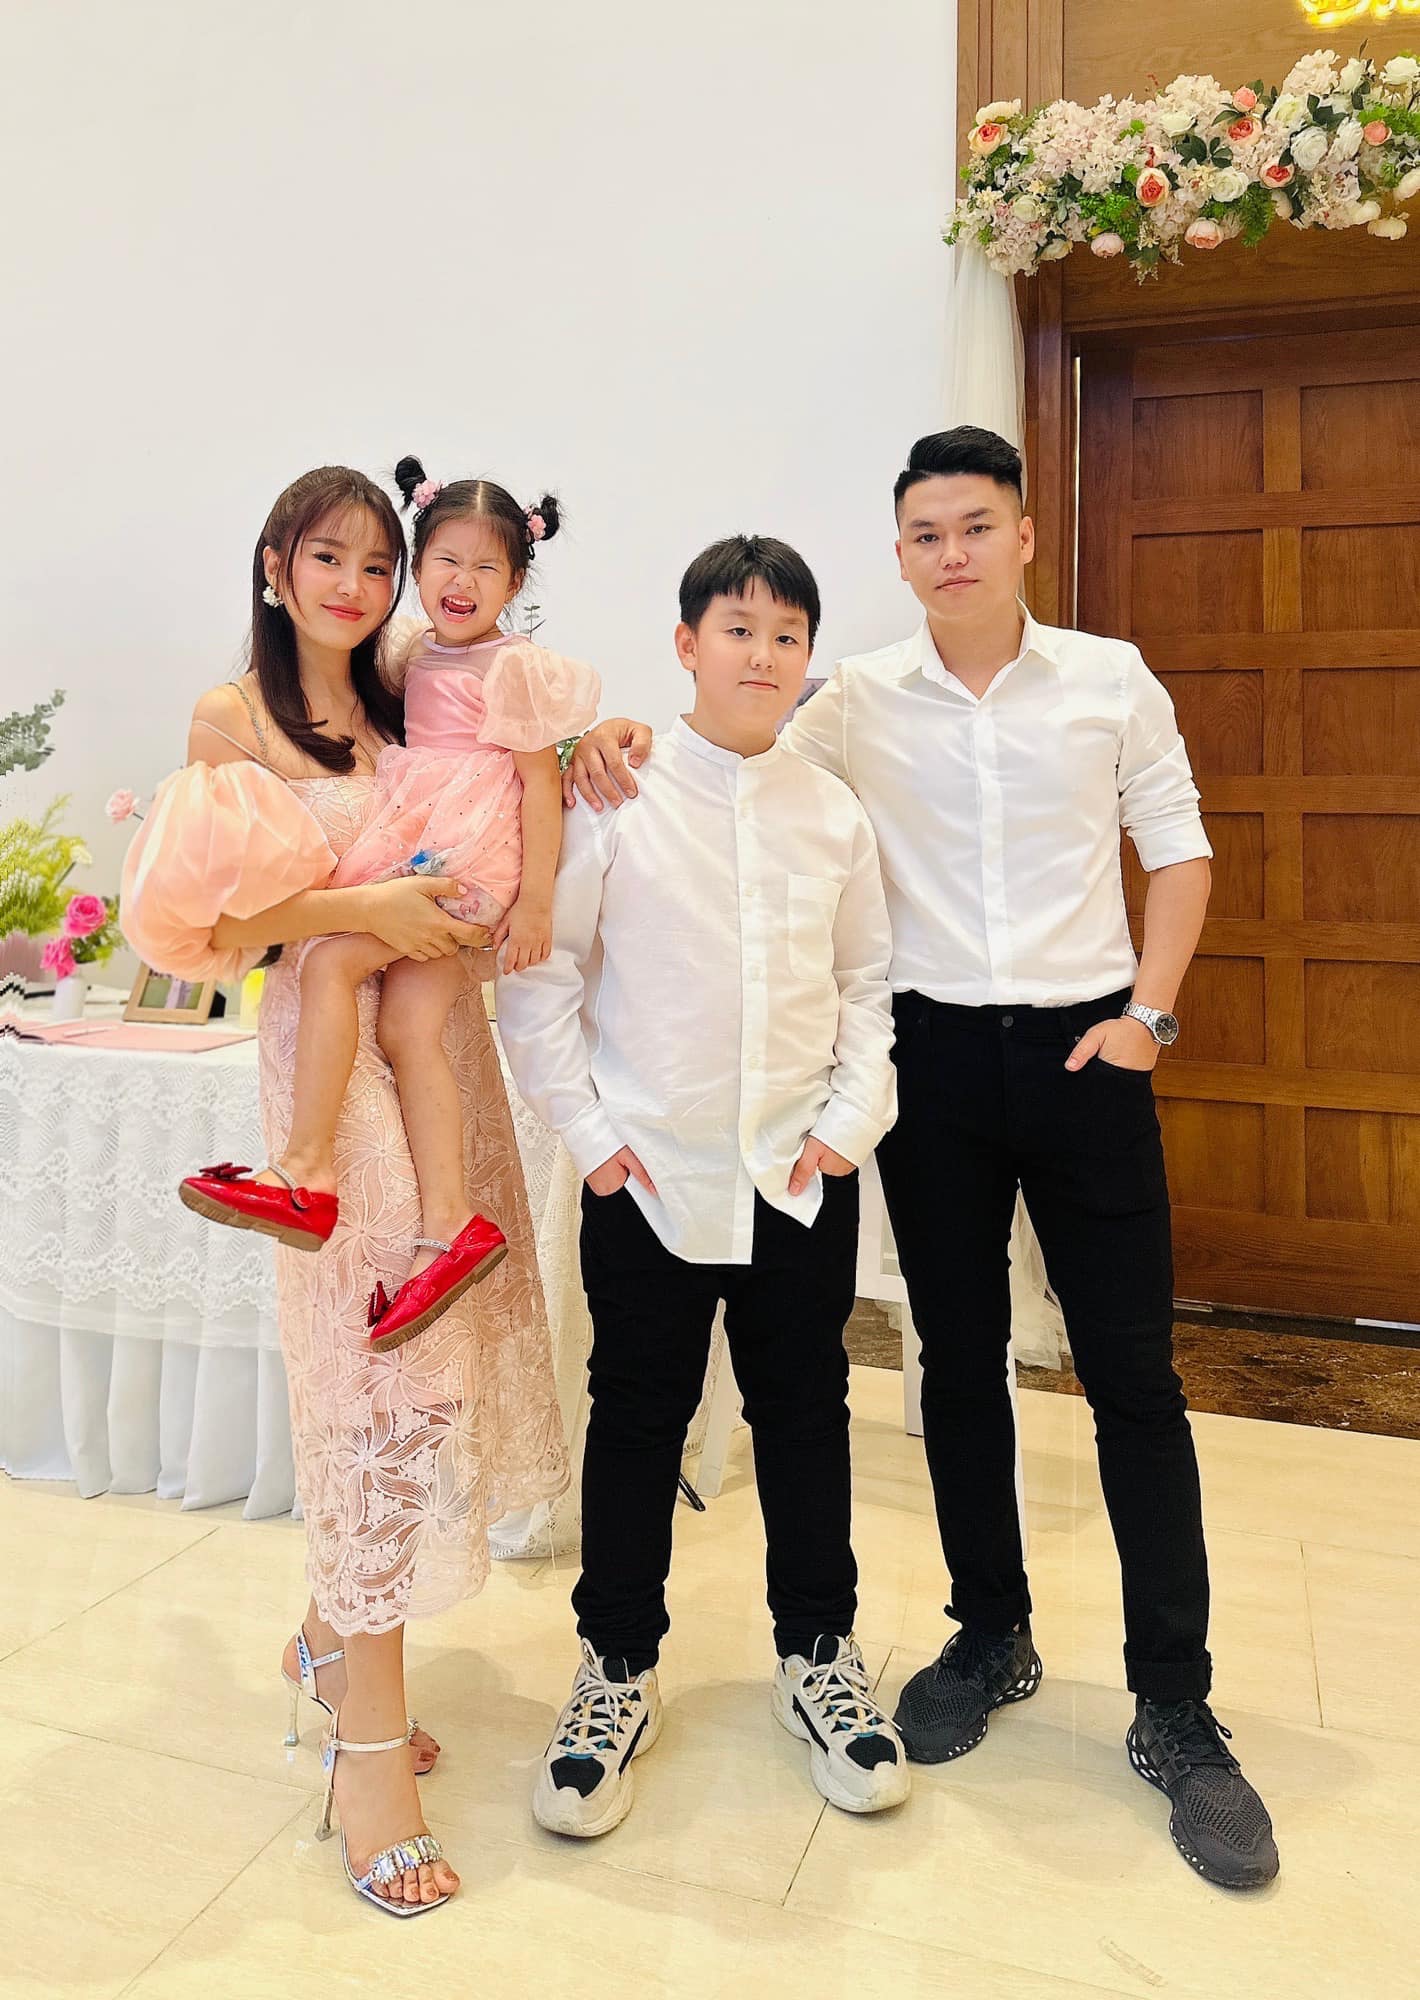 Lê Phương và chồng kém 7 tuổi: Tình yêu nảy nở ở Trường Sa, từng bị phản đối nhưng giờ hạnh phúc đáng ngưỡng mộ - Ảnh 3.